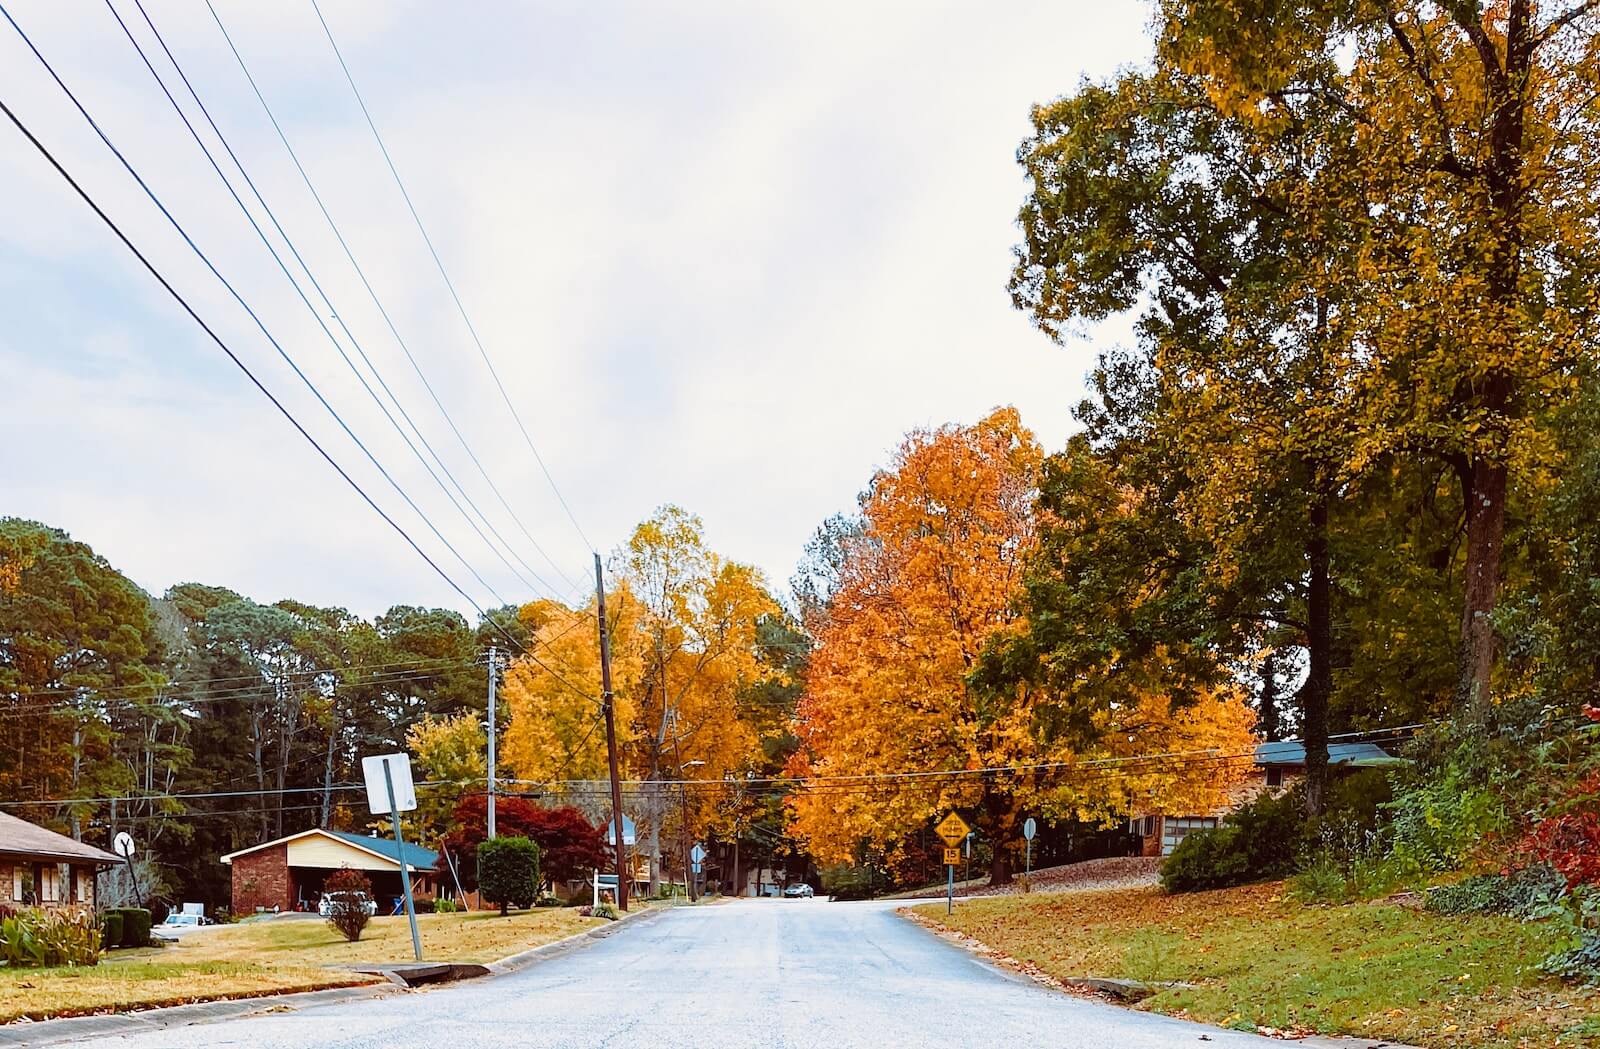 Glenwood Road in Decatur, Georgia